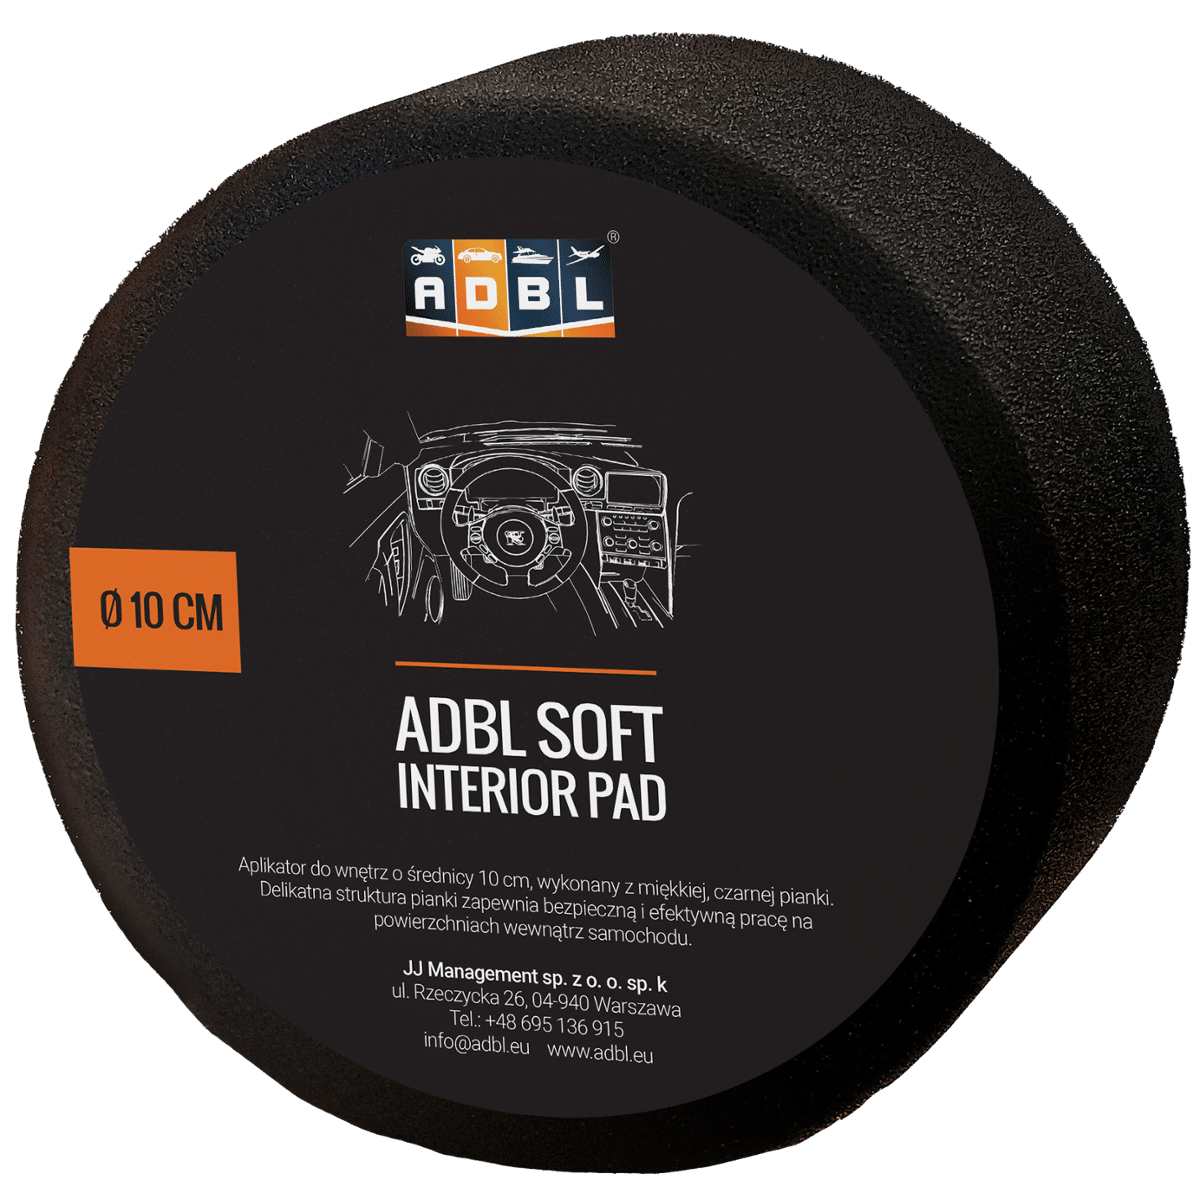 ADBL Soft Pad Aplikator Okrągły Czarny Piankowy Średnica 10cm